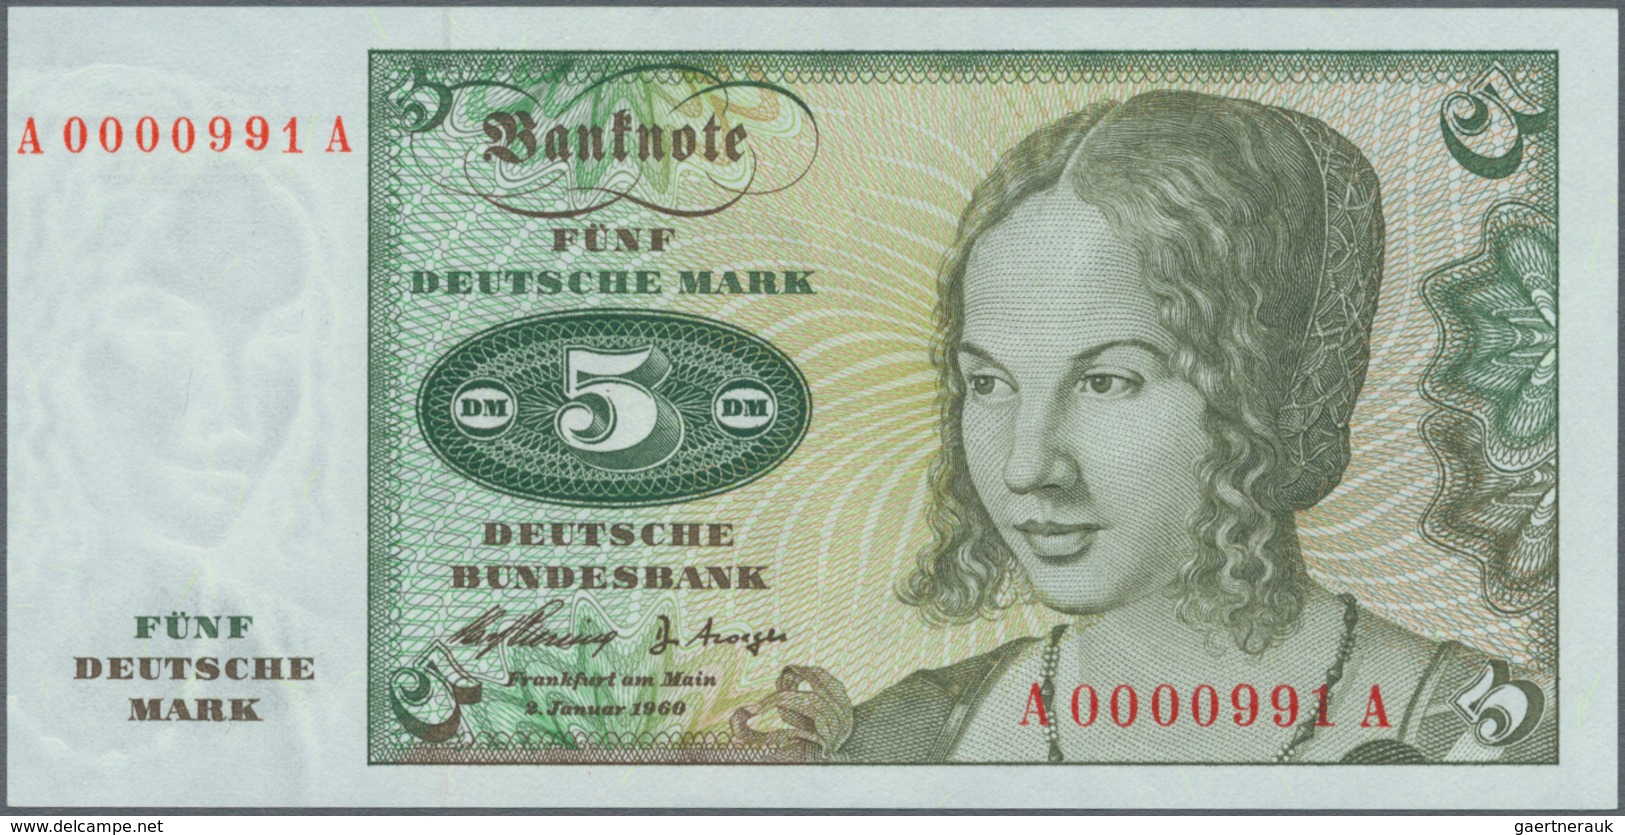 Deutschland - Bank Deutscher Länder + Bundesrepublik Deutschland: Sehr schönes Lot mit 4 Banknoten d